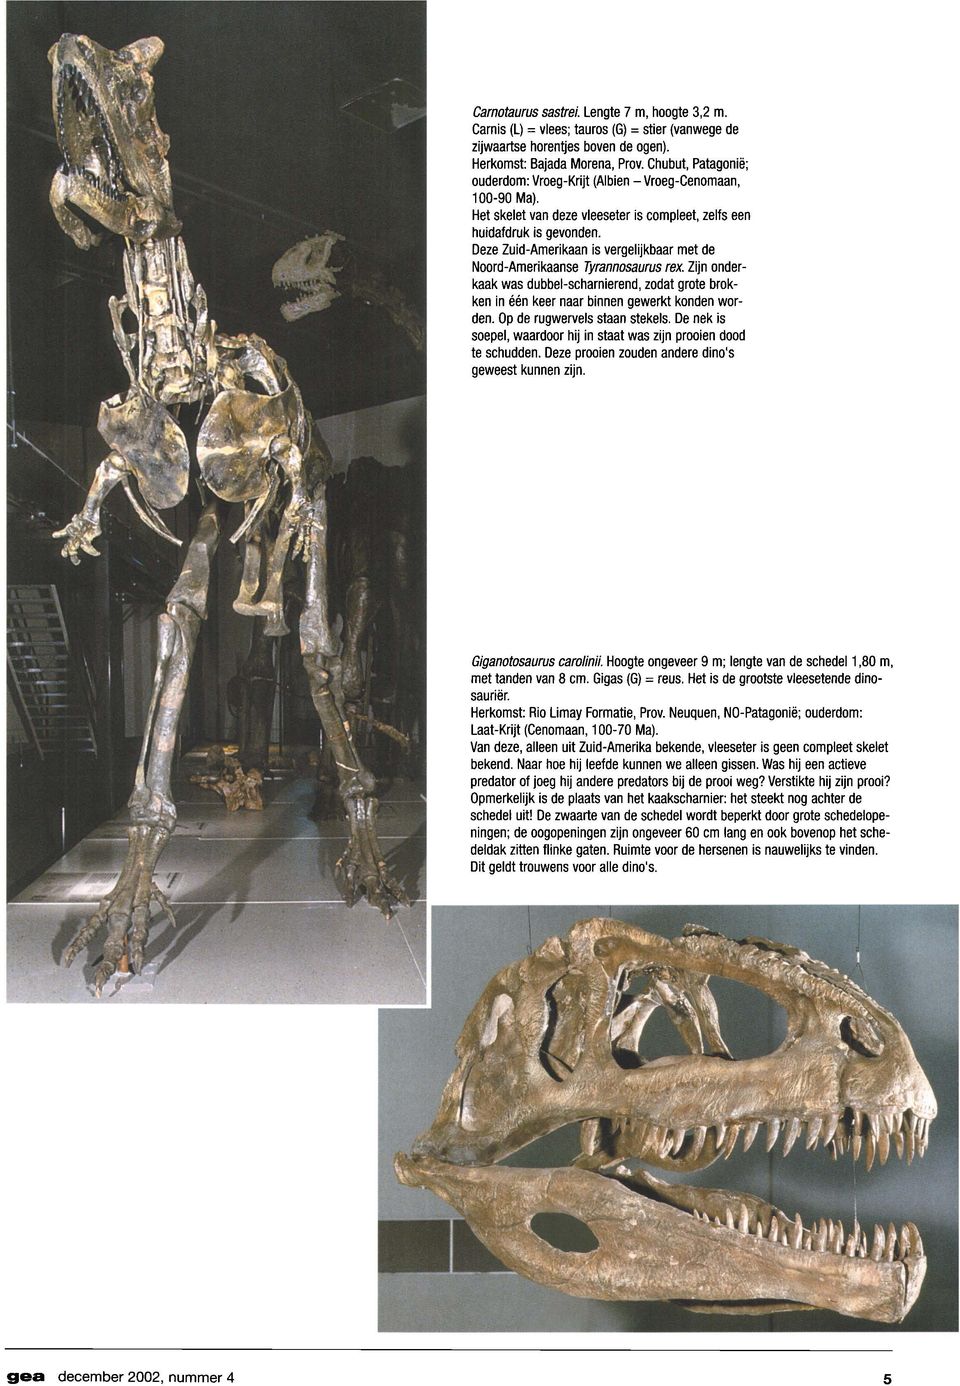 Deze Zuid-Amerikaan is vergelijkbaar met de Noord-Amerikaanse Tyrannosaurus rex. Zijn onderkaak was dubbel-scharnierend, zodat grote brokken in een keer naar binnen gewerkt konden worden.